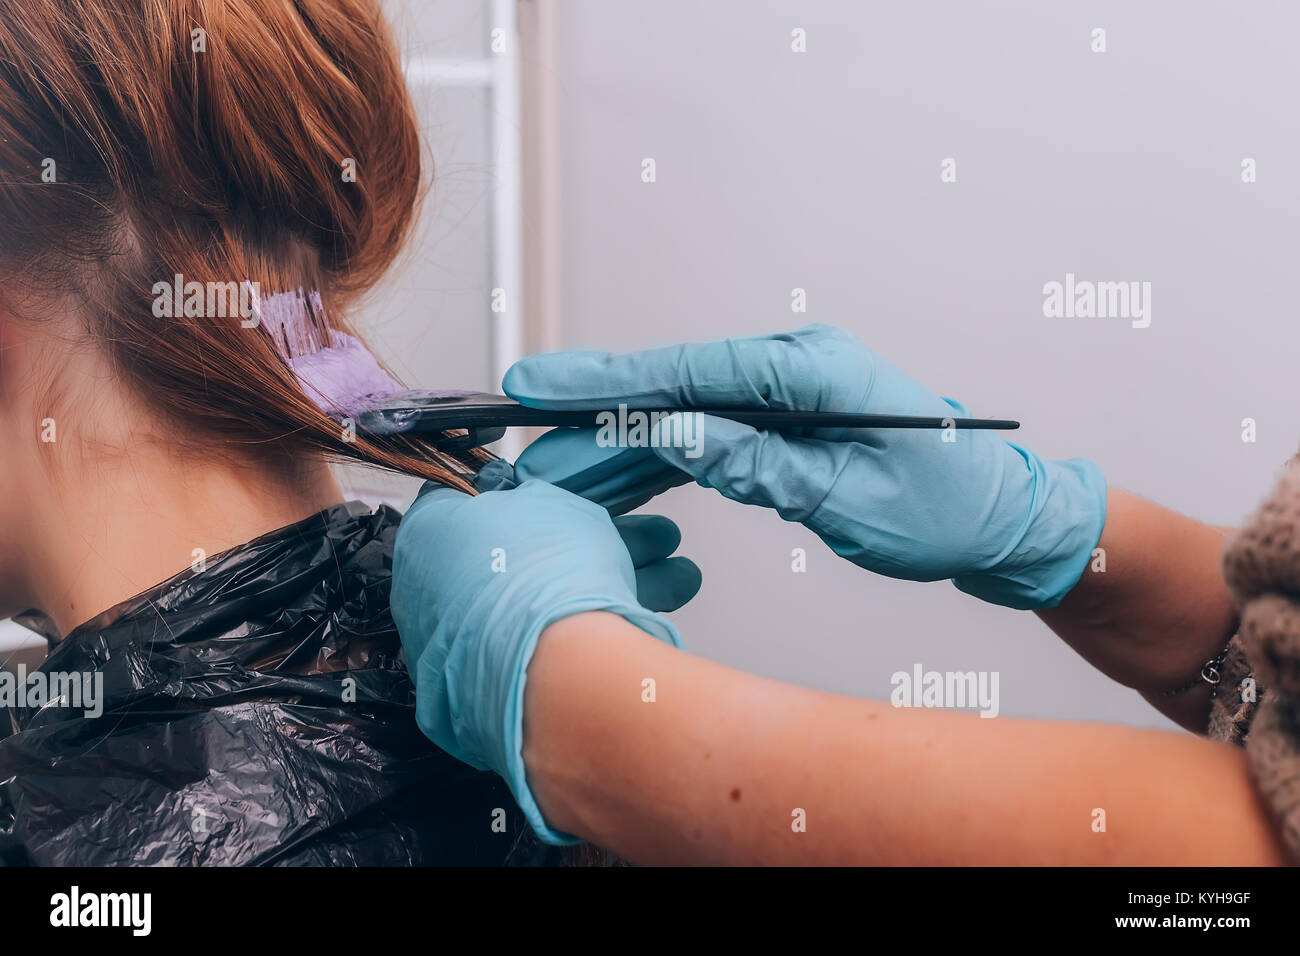 Professionelle Friseur färben Haare ihrer Kunden im Salon. Selektive konzentrieren. Stockfoto